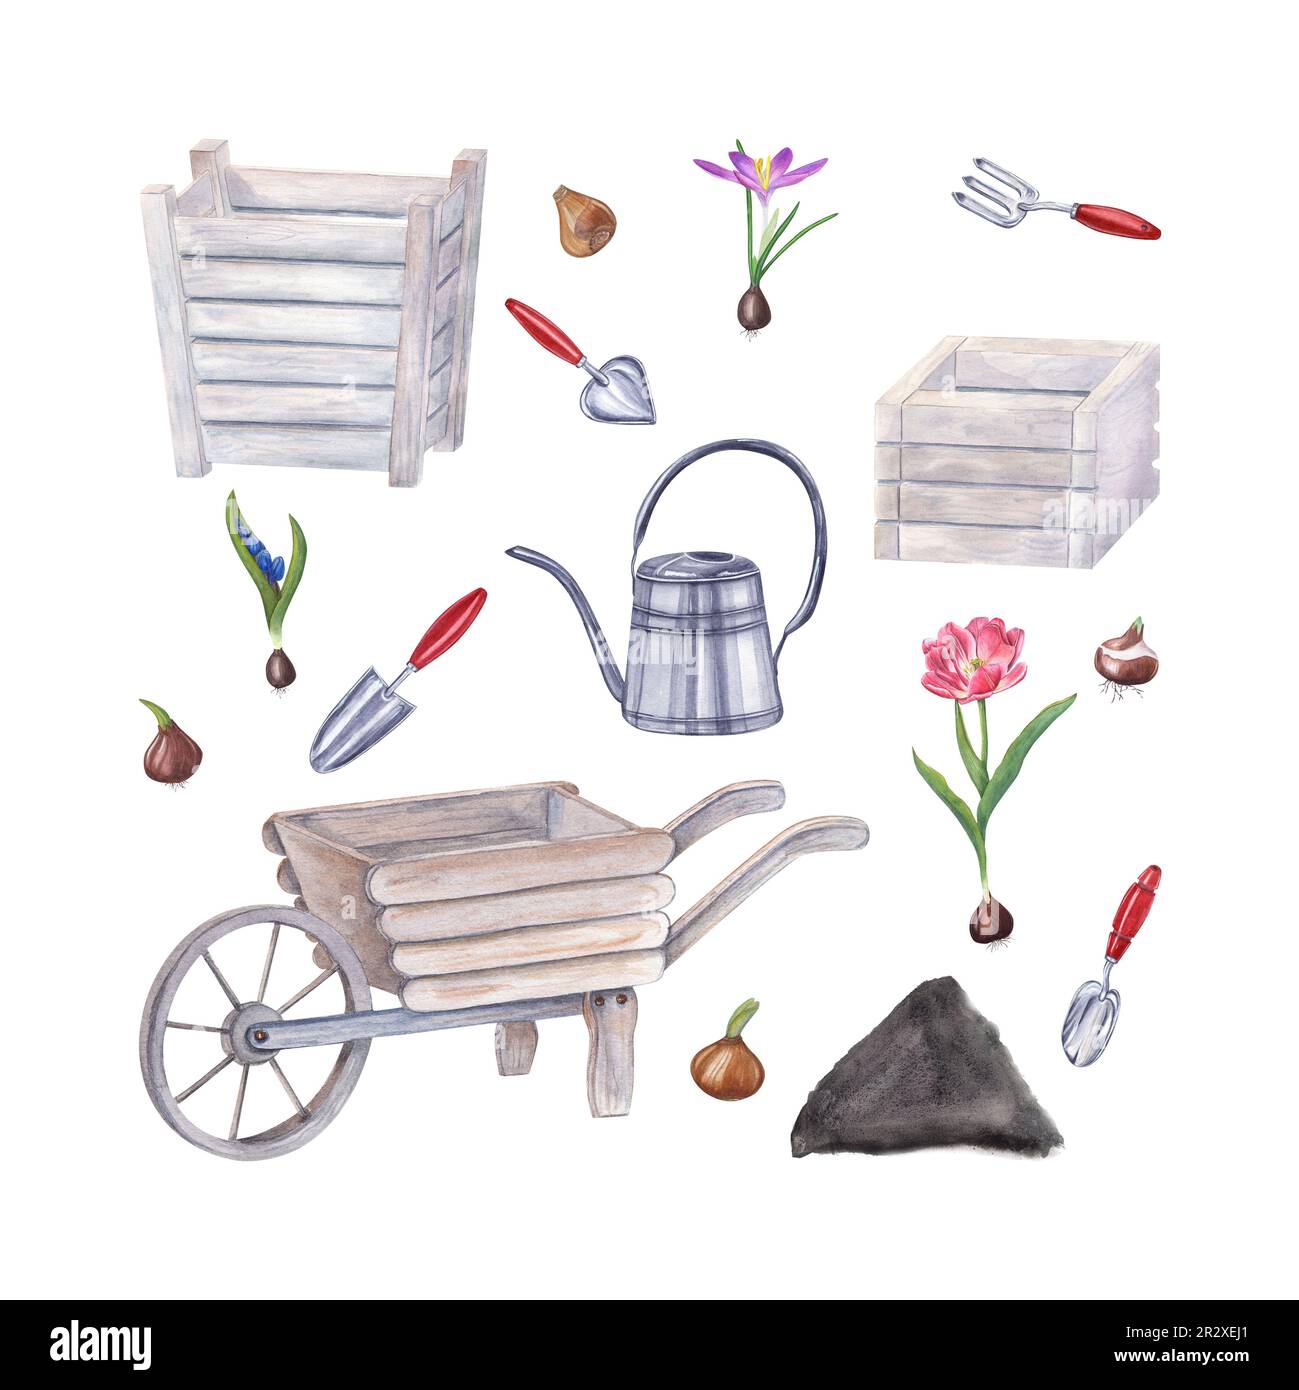 Acquerello attrezzi da giardino, bulbi di fiori, doppio tulipano rosa, croco, scilla isolato su sfondo bianco. Illustrazione di annaffiando può, pentole di legno Foto Stock